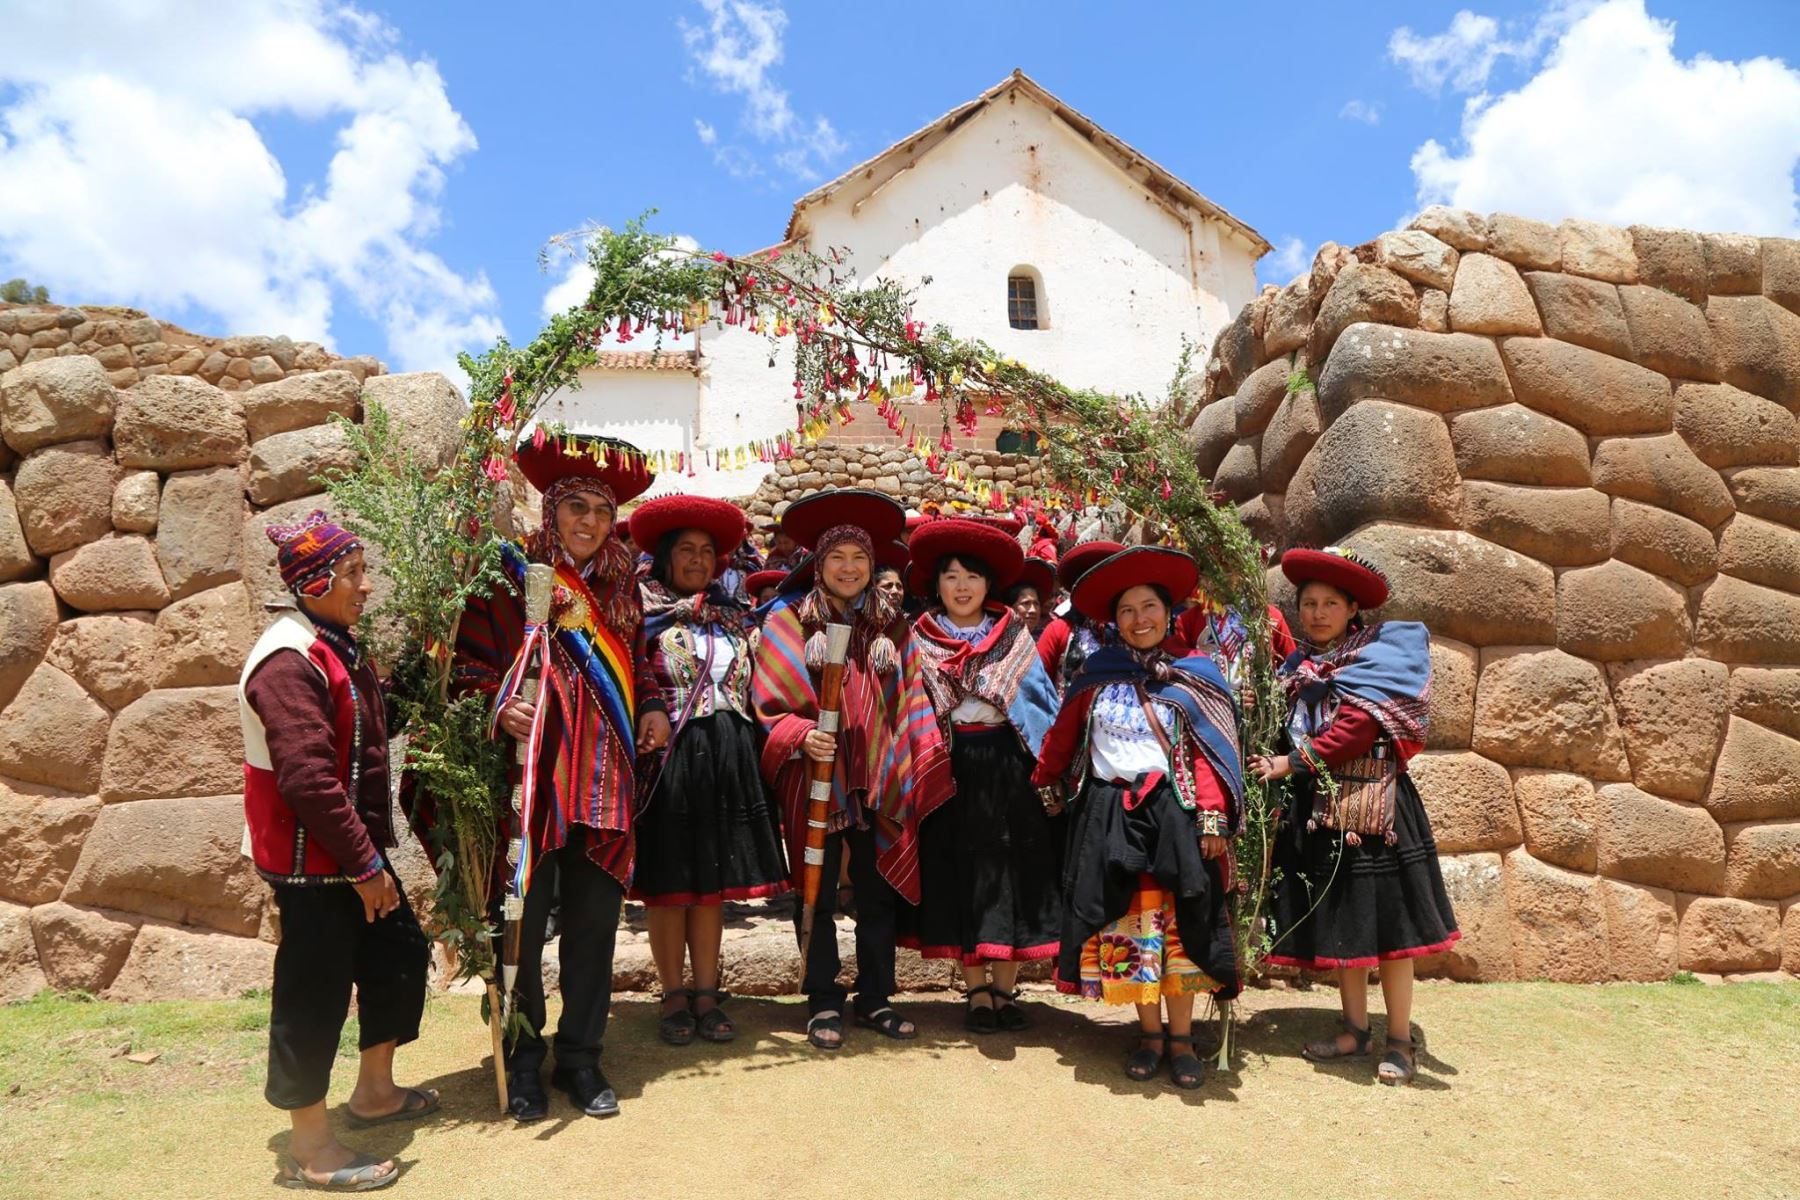 Con ceremonia andina pareja japonesa contrae matrimonio en Cusco. Foto: Municipalidad de Chinchero